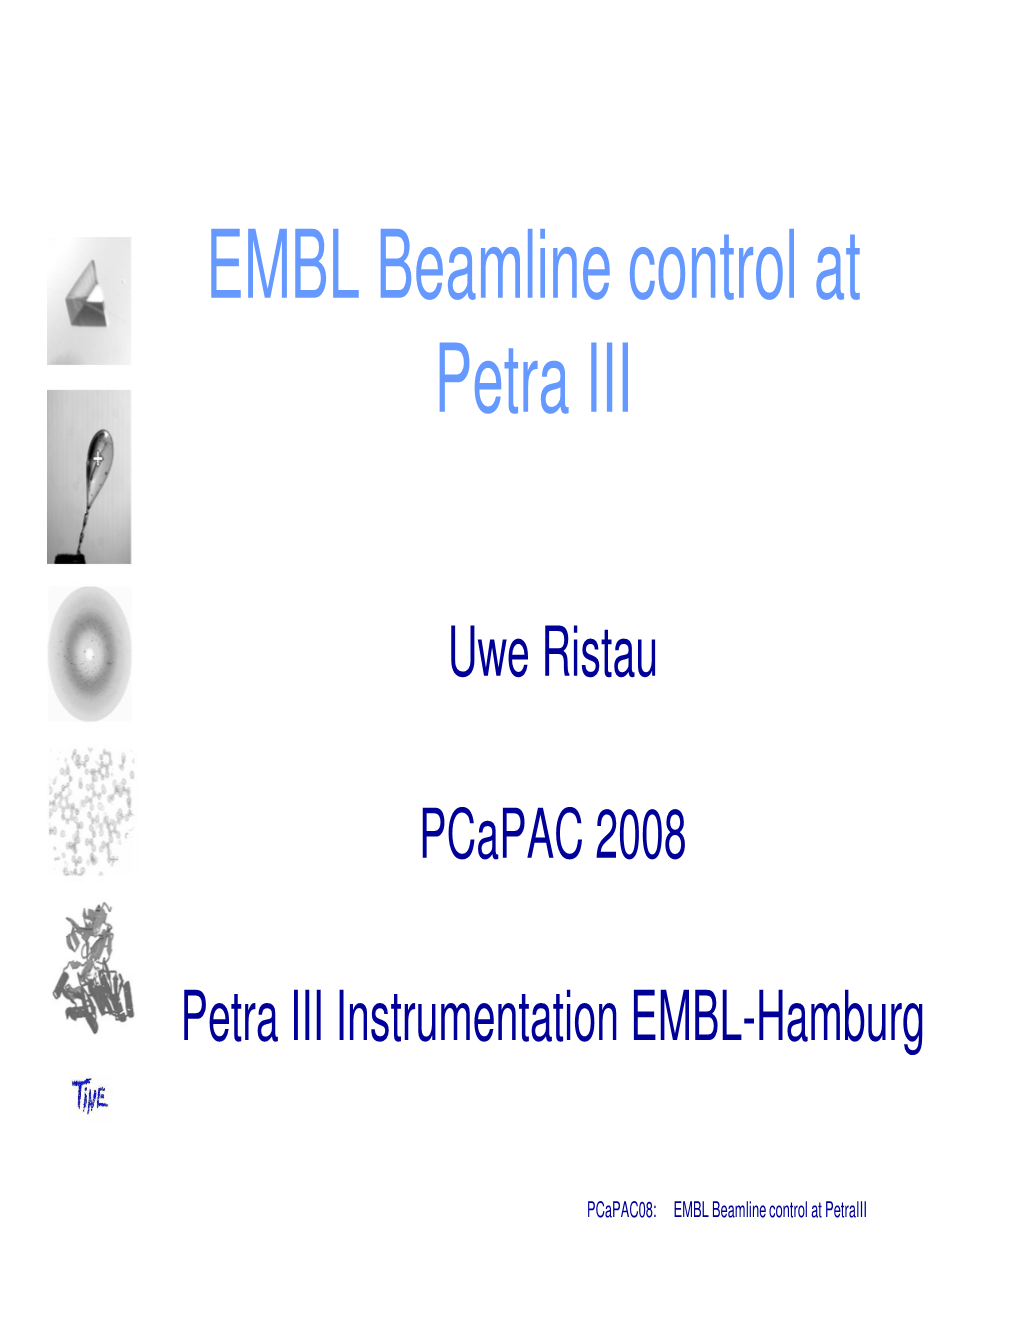 EMBL Beamline Control at Petra III